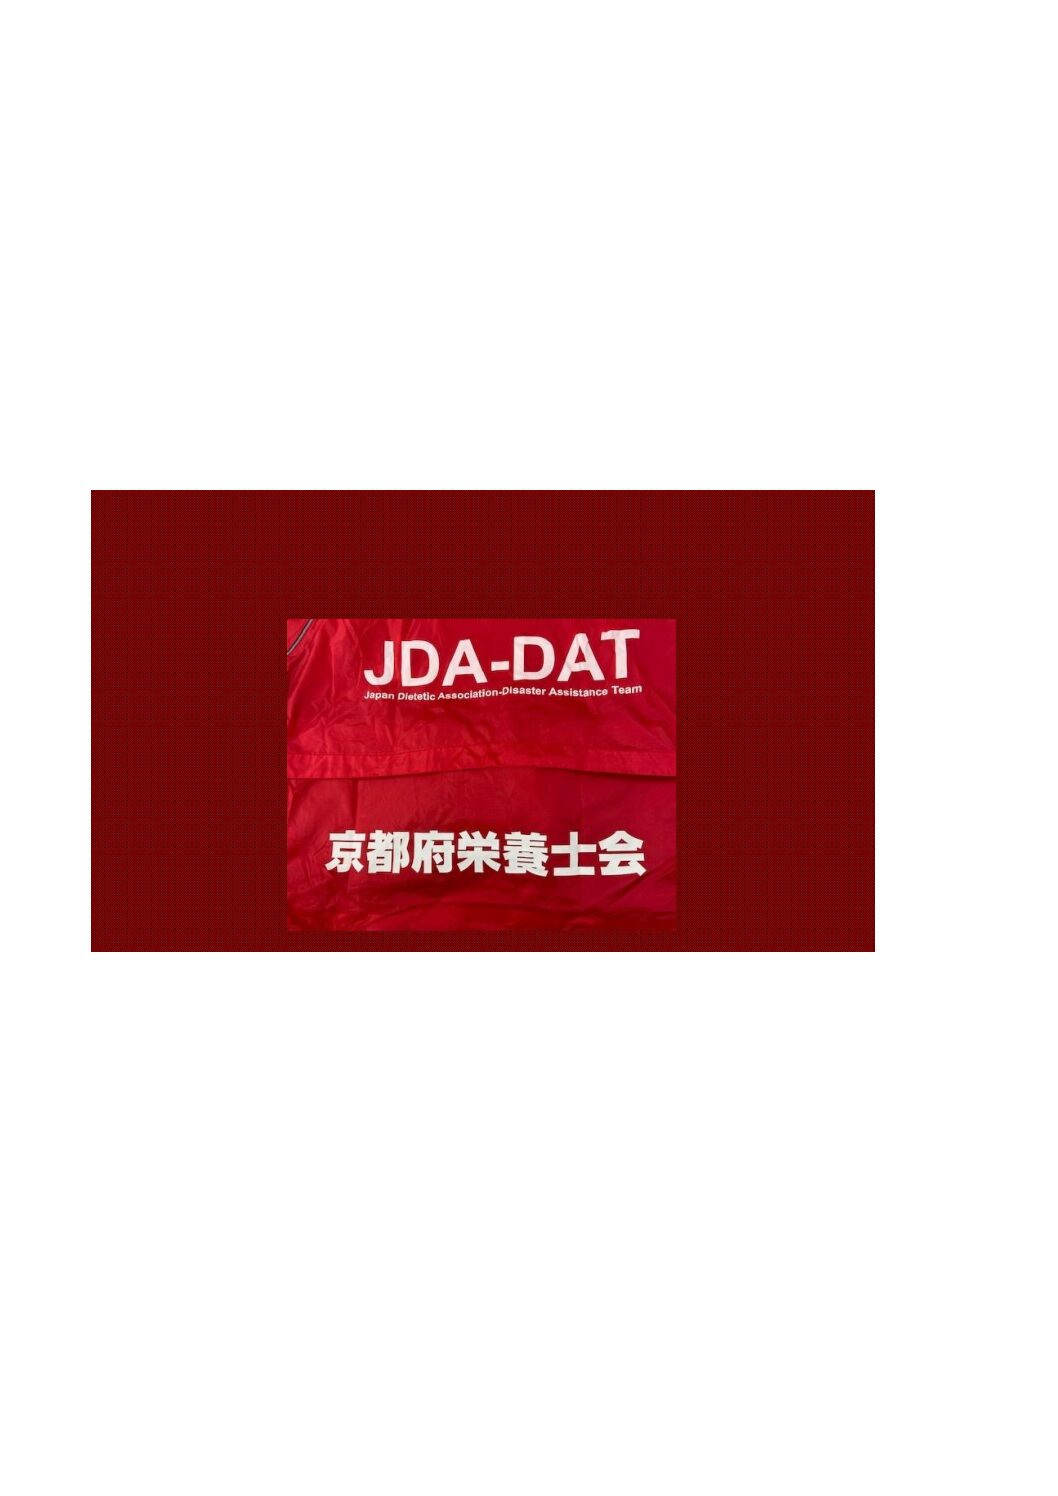 災害支援チーム（JDA-DAT京都）スタッフ養成研修②3月18日（土）